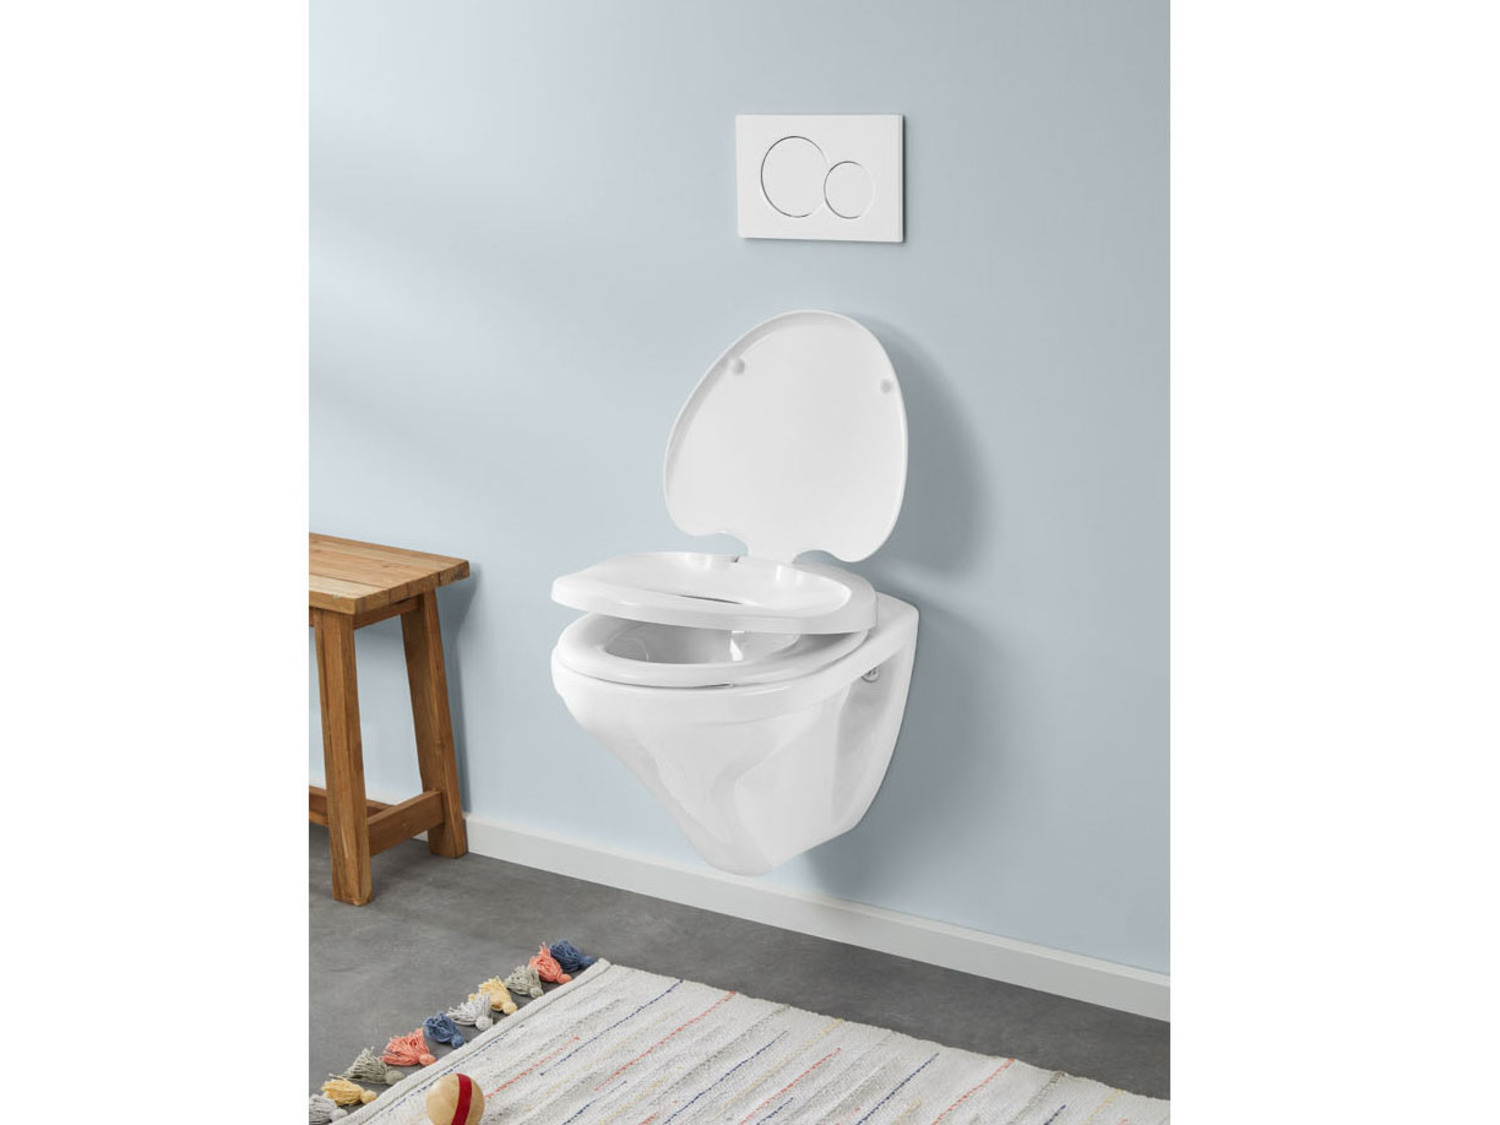 Abattant wc, reducteur toilette familial avec siège enfant, frein